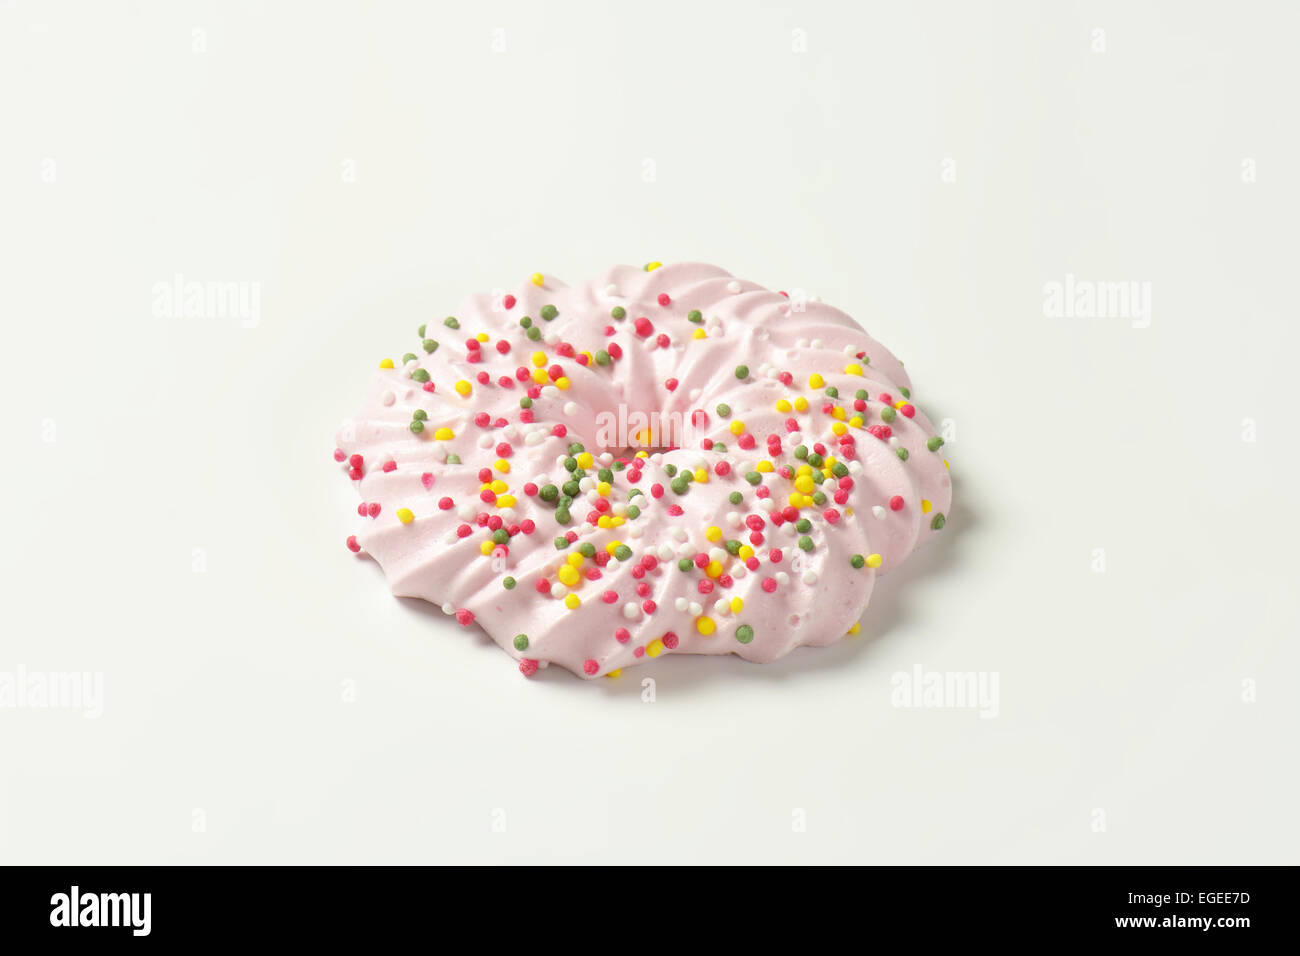 Corona a forma di cookie di meringa condito con un pizzico Foto Stock